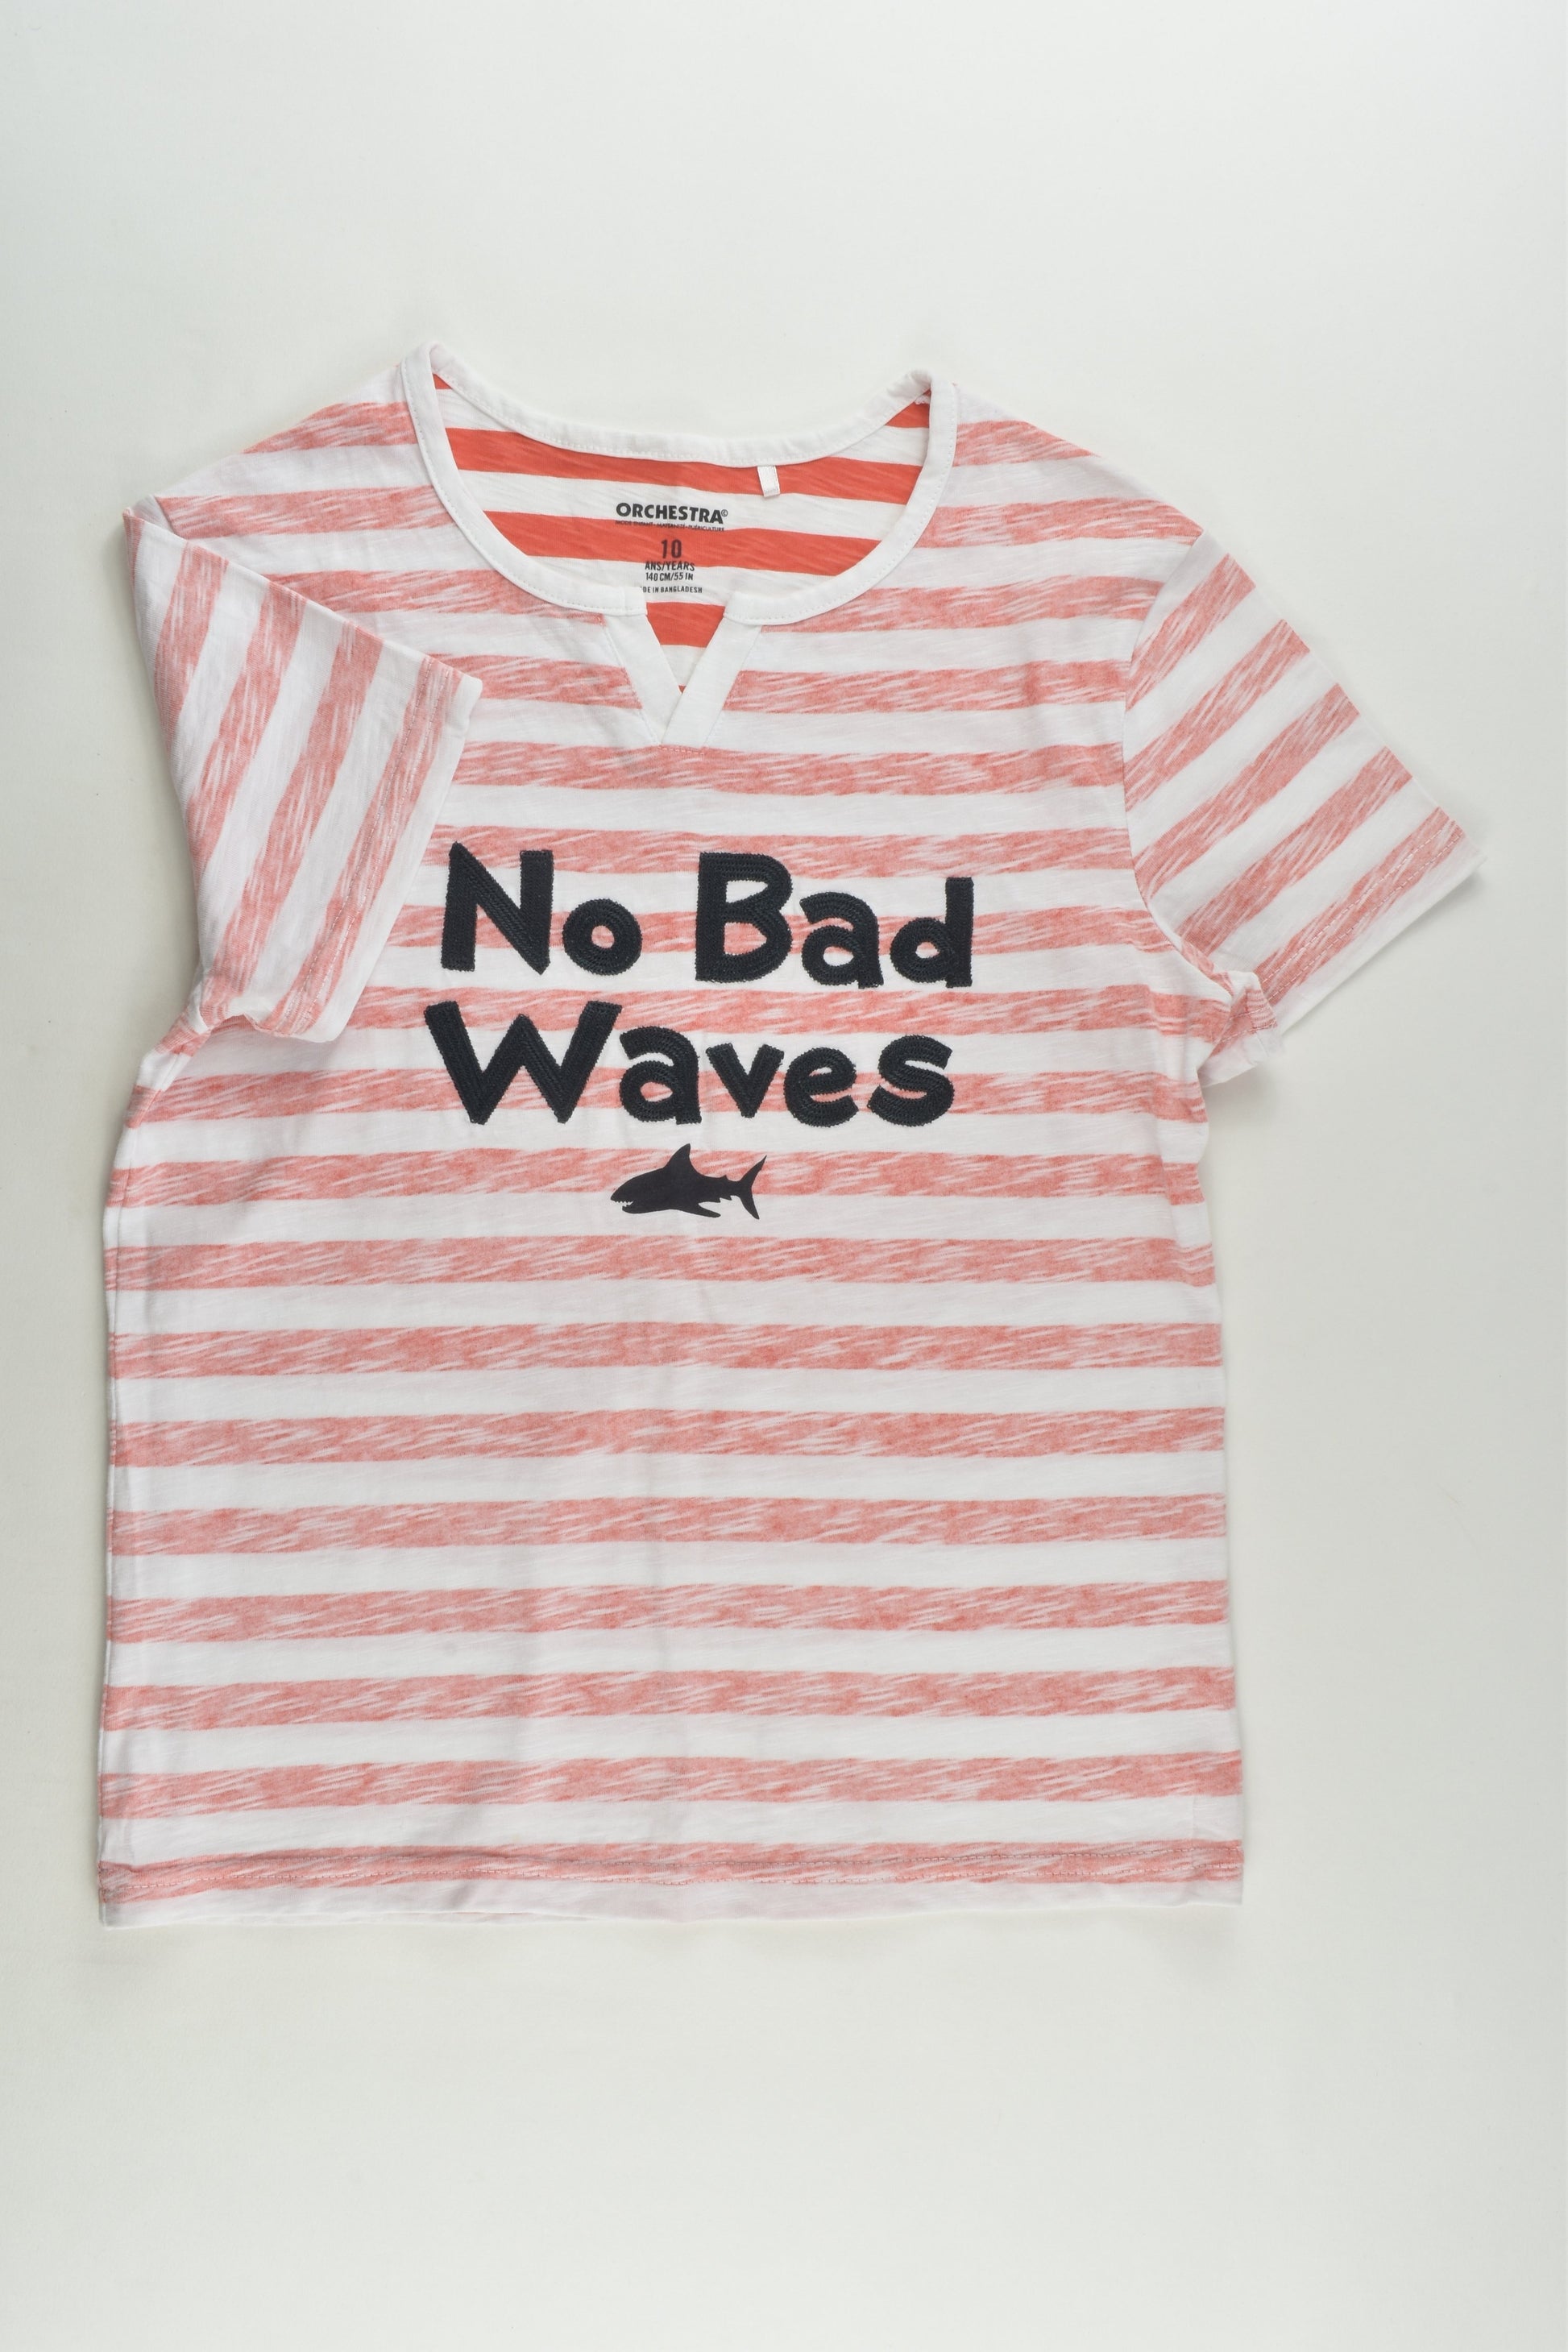 Orchestra Size 10 'No Bad Waves' T-shirt